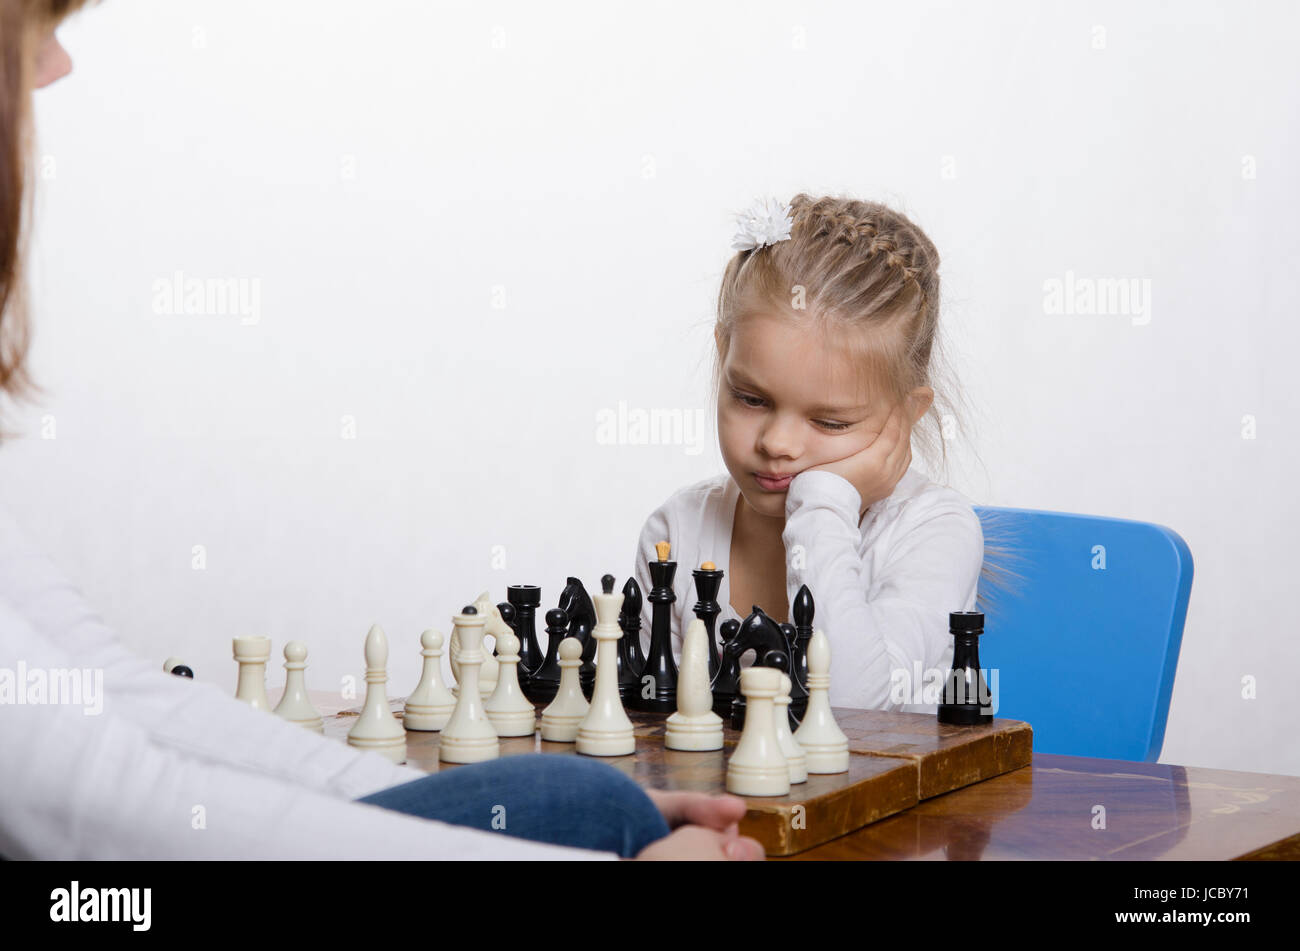 Quattro-anno-vecchia ragazza che gioca a scacchi. Ragazza in cerca di divertimento nel telaio con la figura in mano, si prepara a fare una mossa Foto Stock